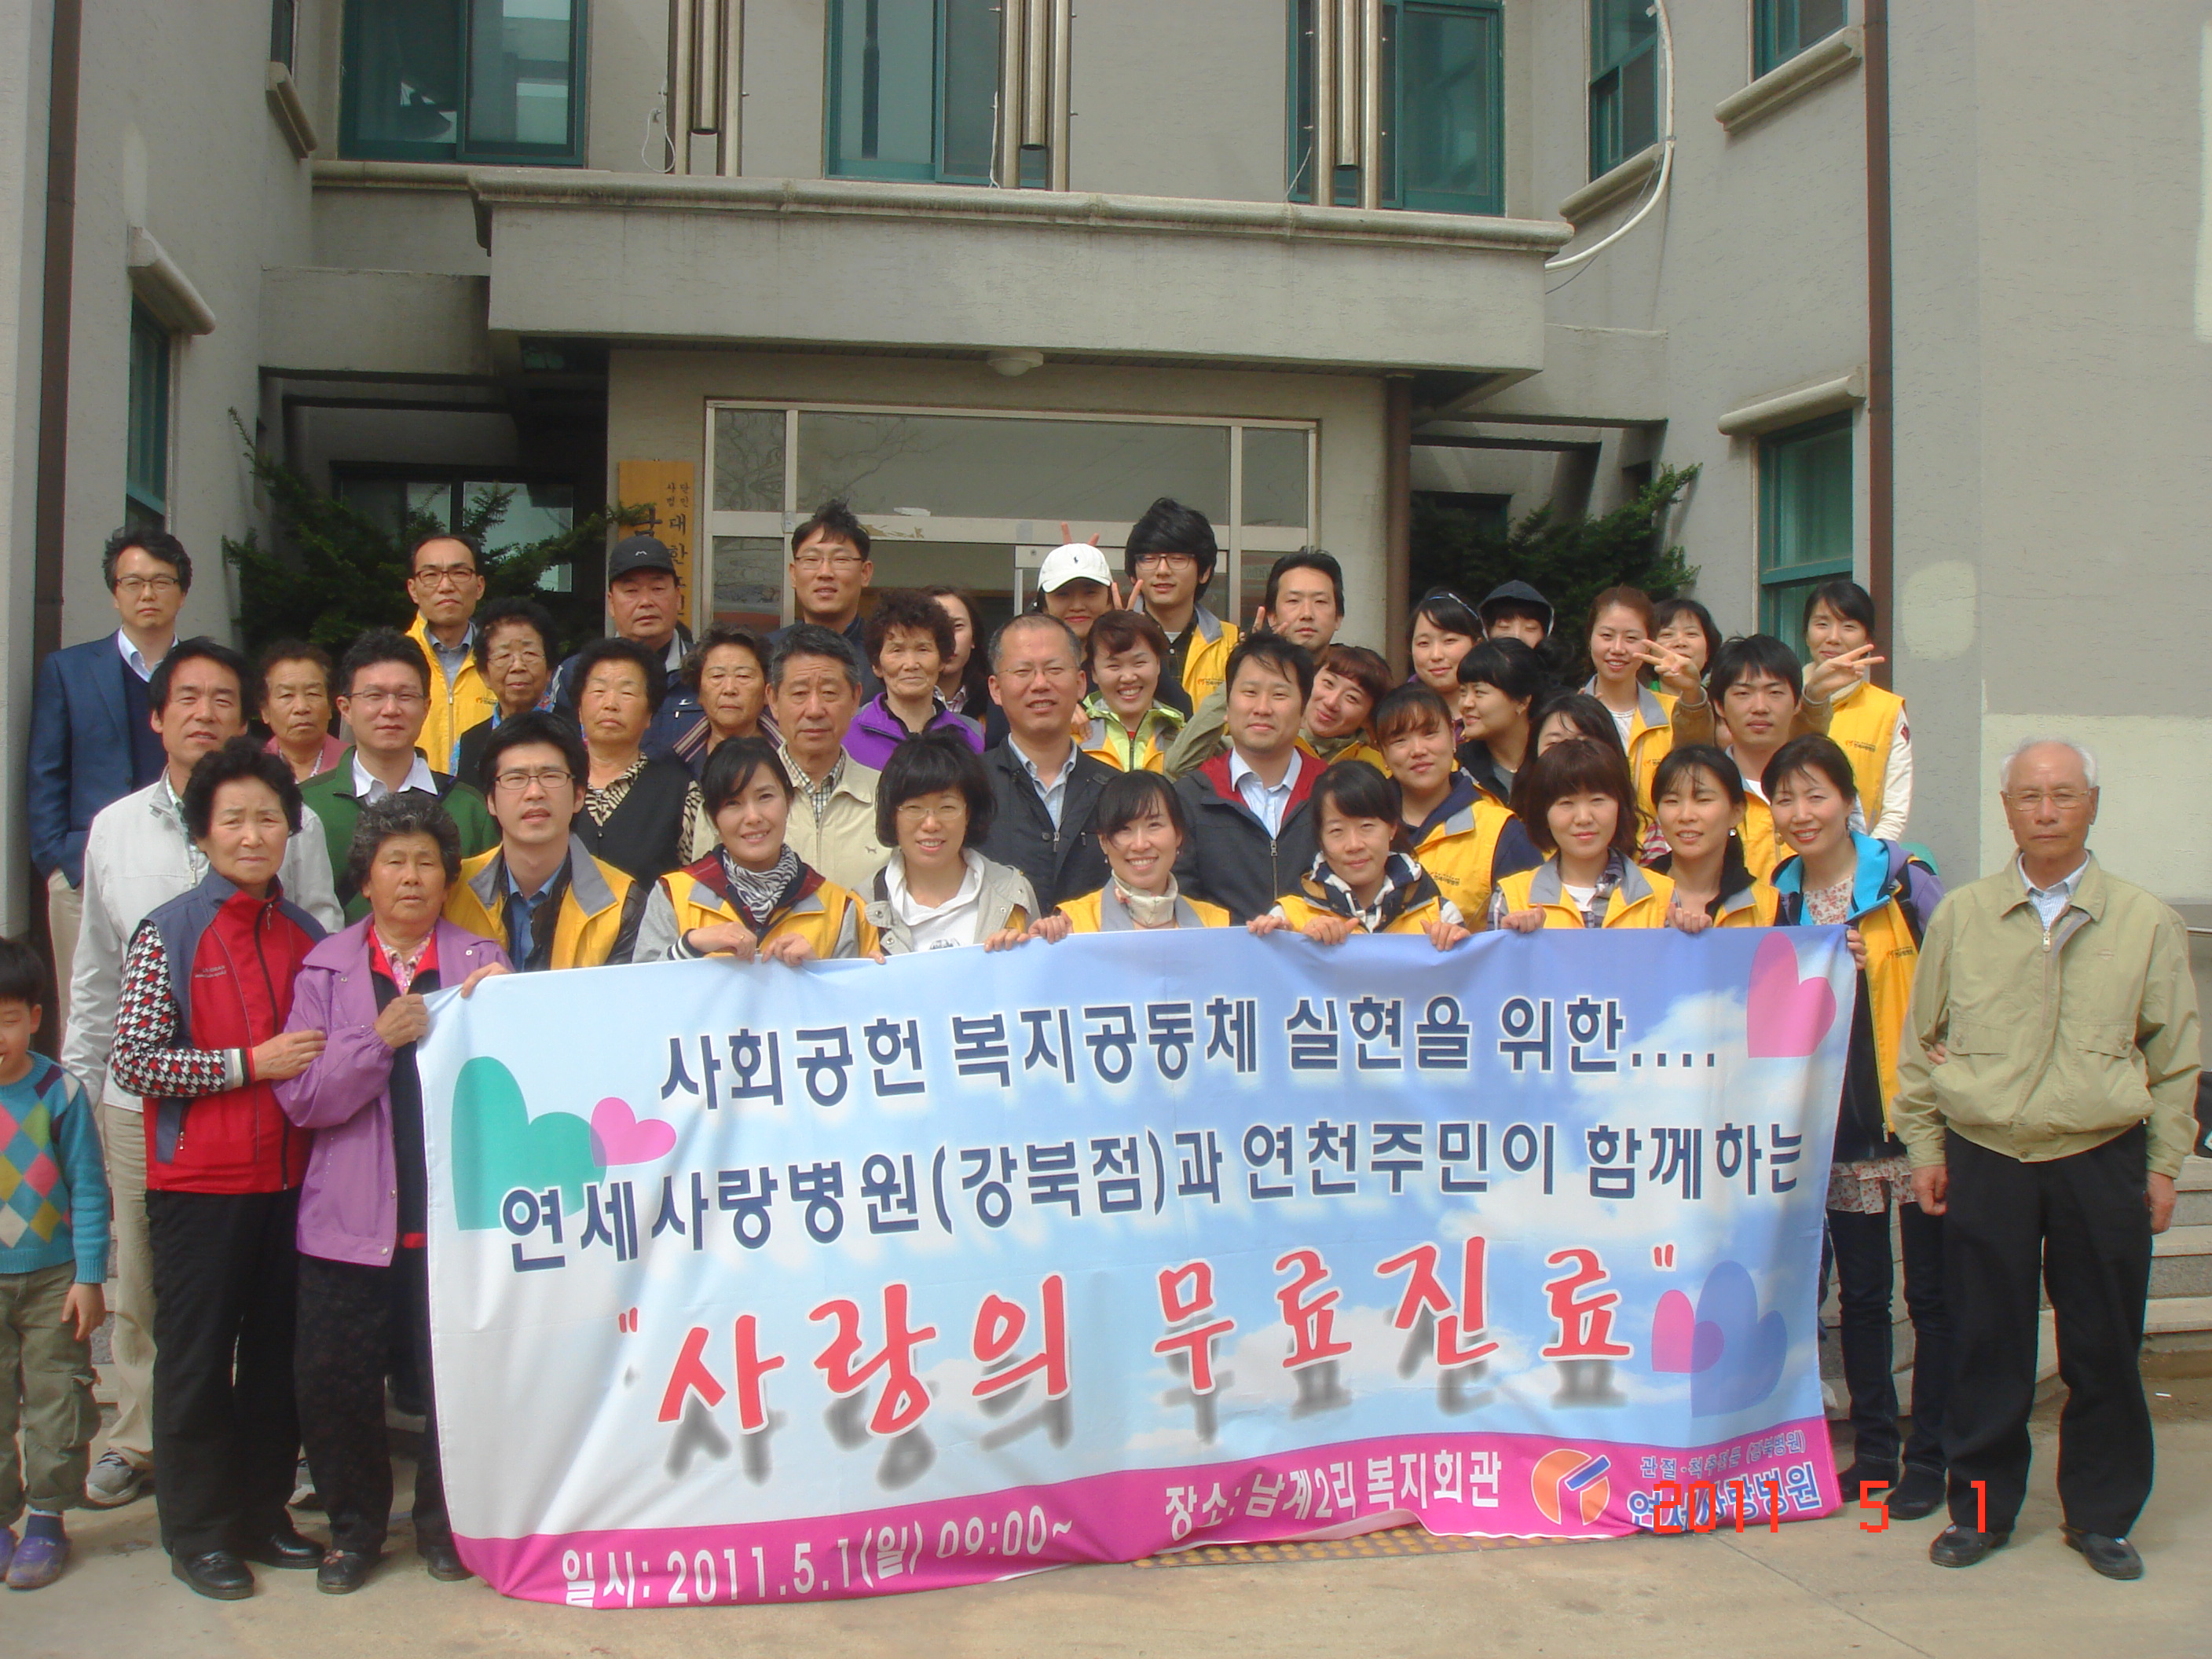 [강북점]2011년 5월 1일 - 사랑의 건강강좌 (경기도 연천군) 게시글의 23번째 첨부파일입니다.